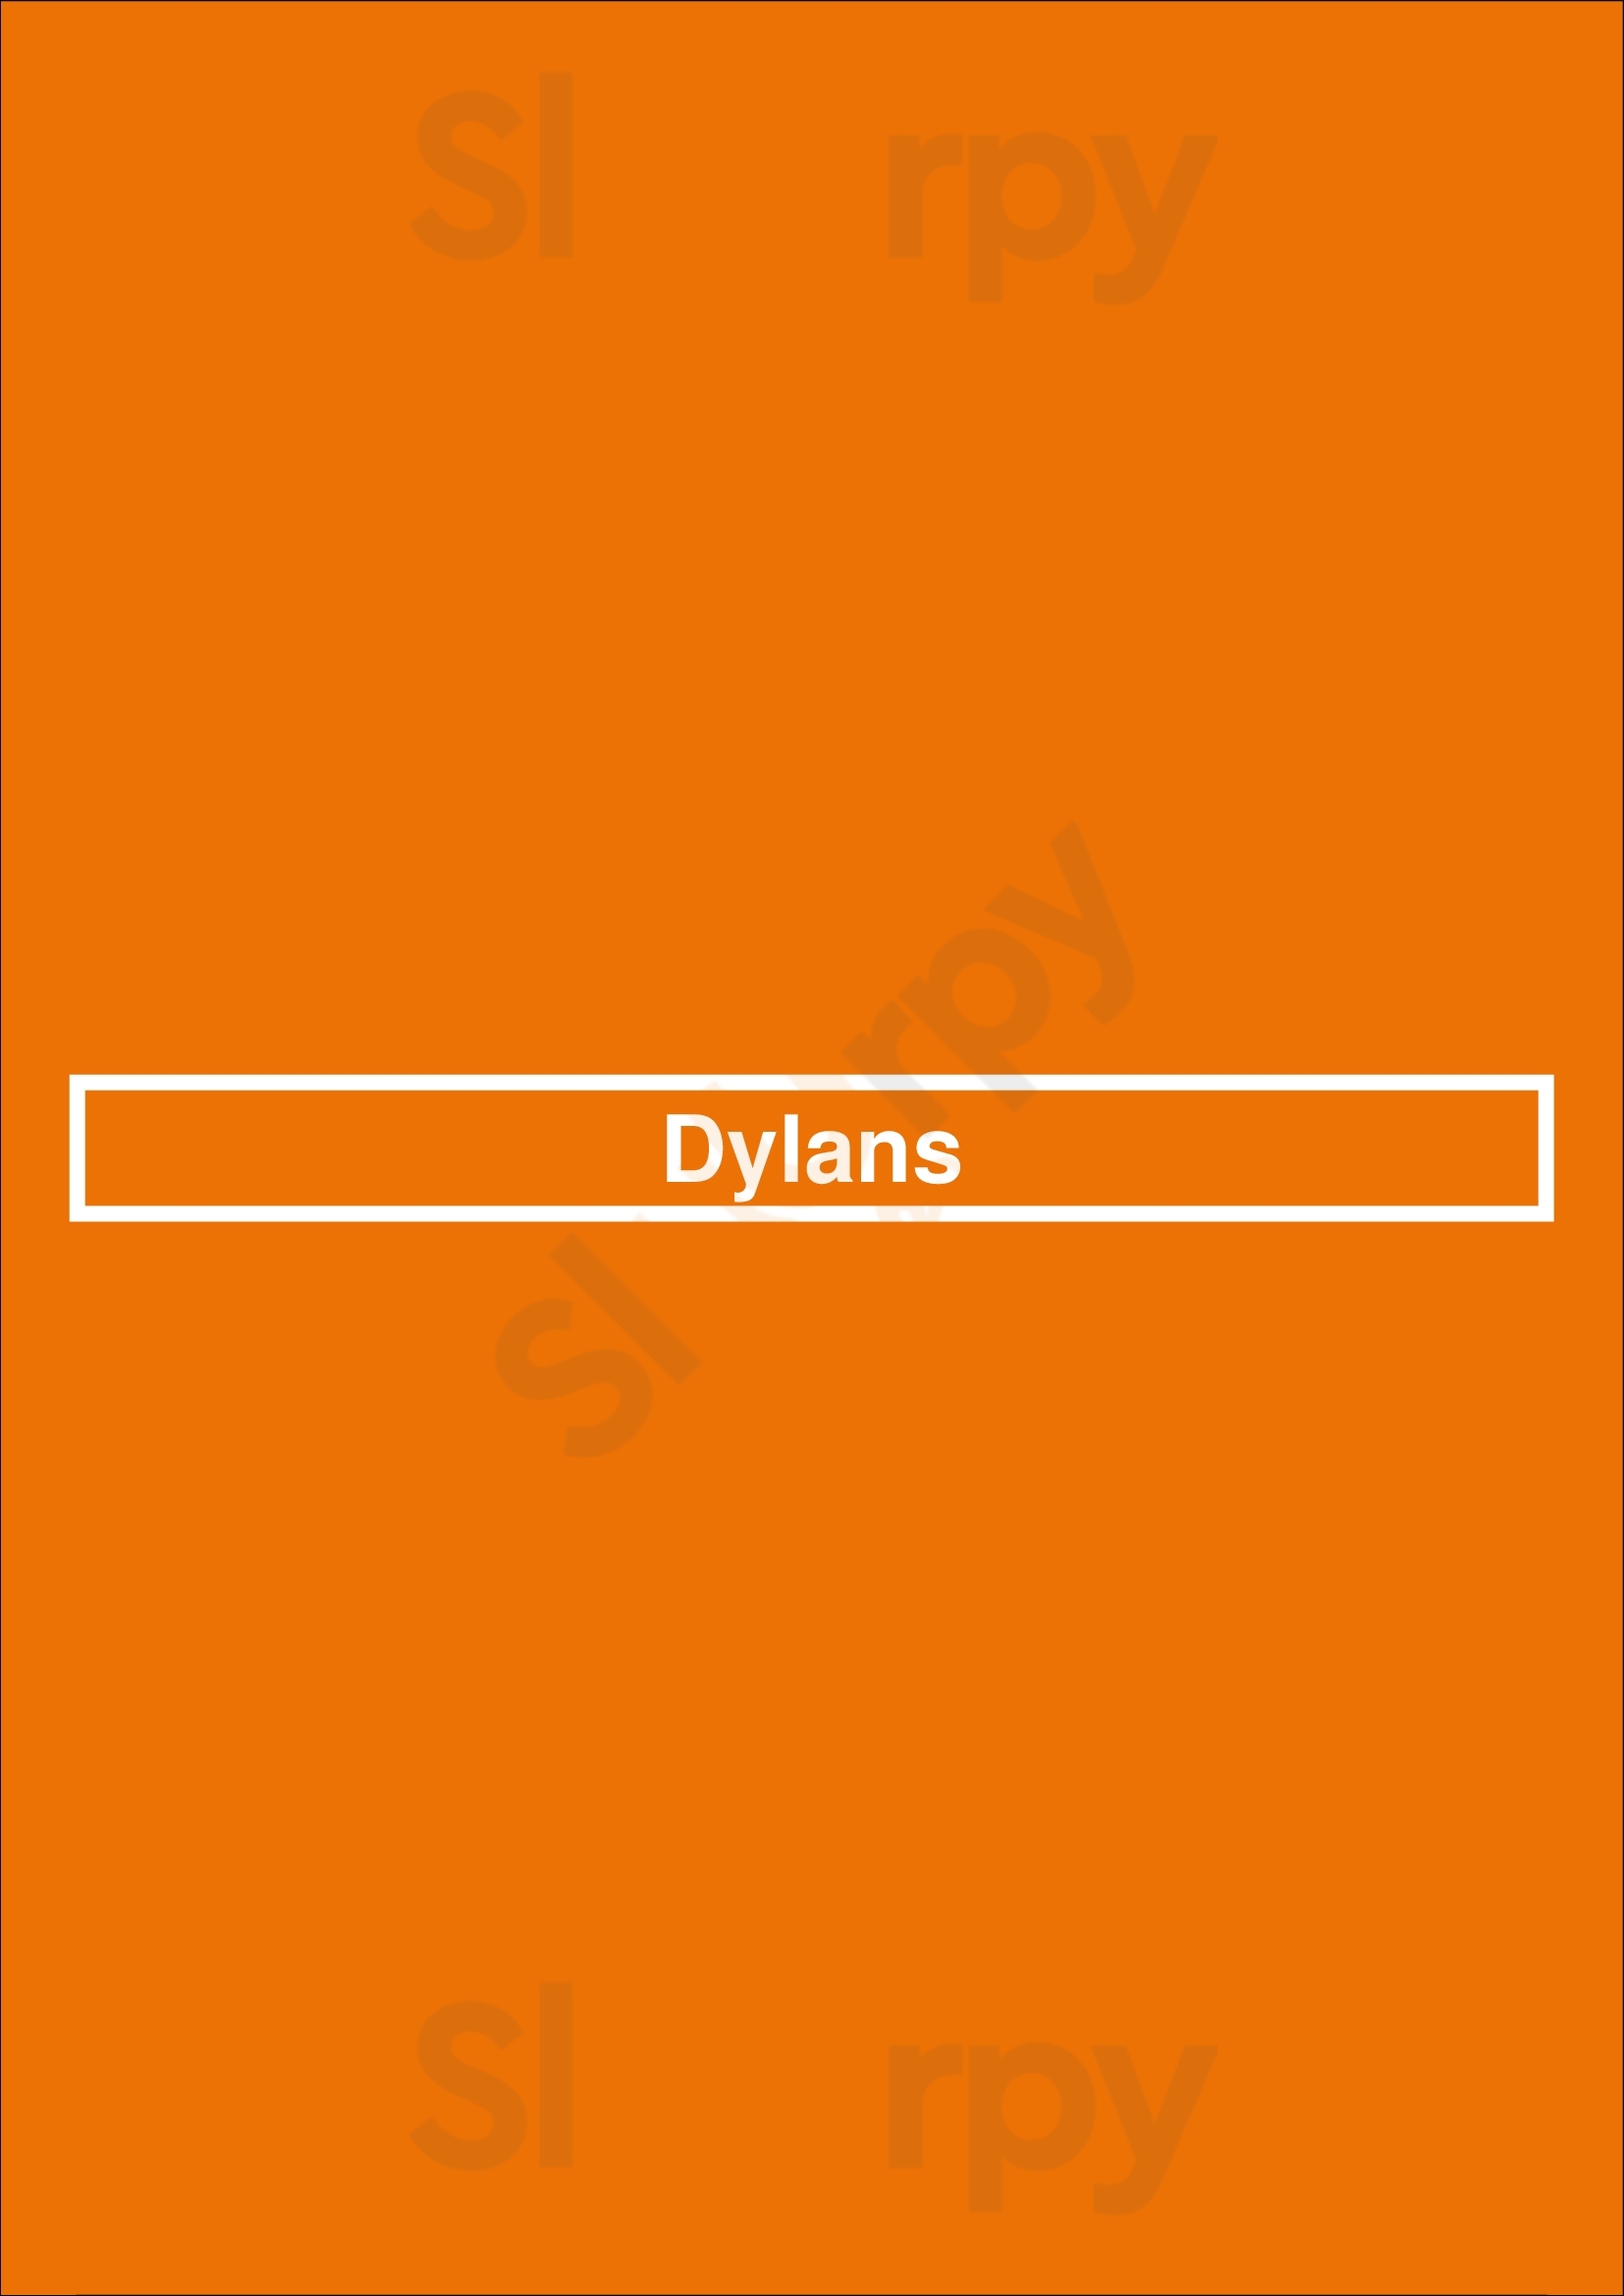 Dylans Noordwijk Menu - 1